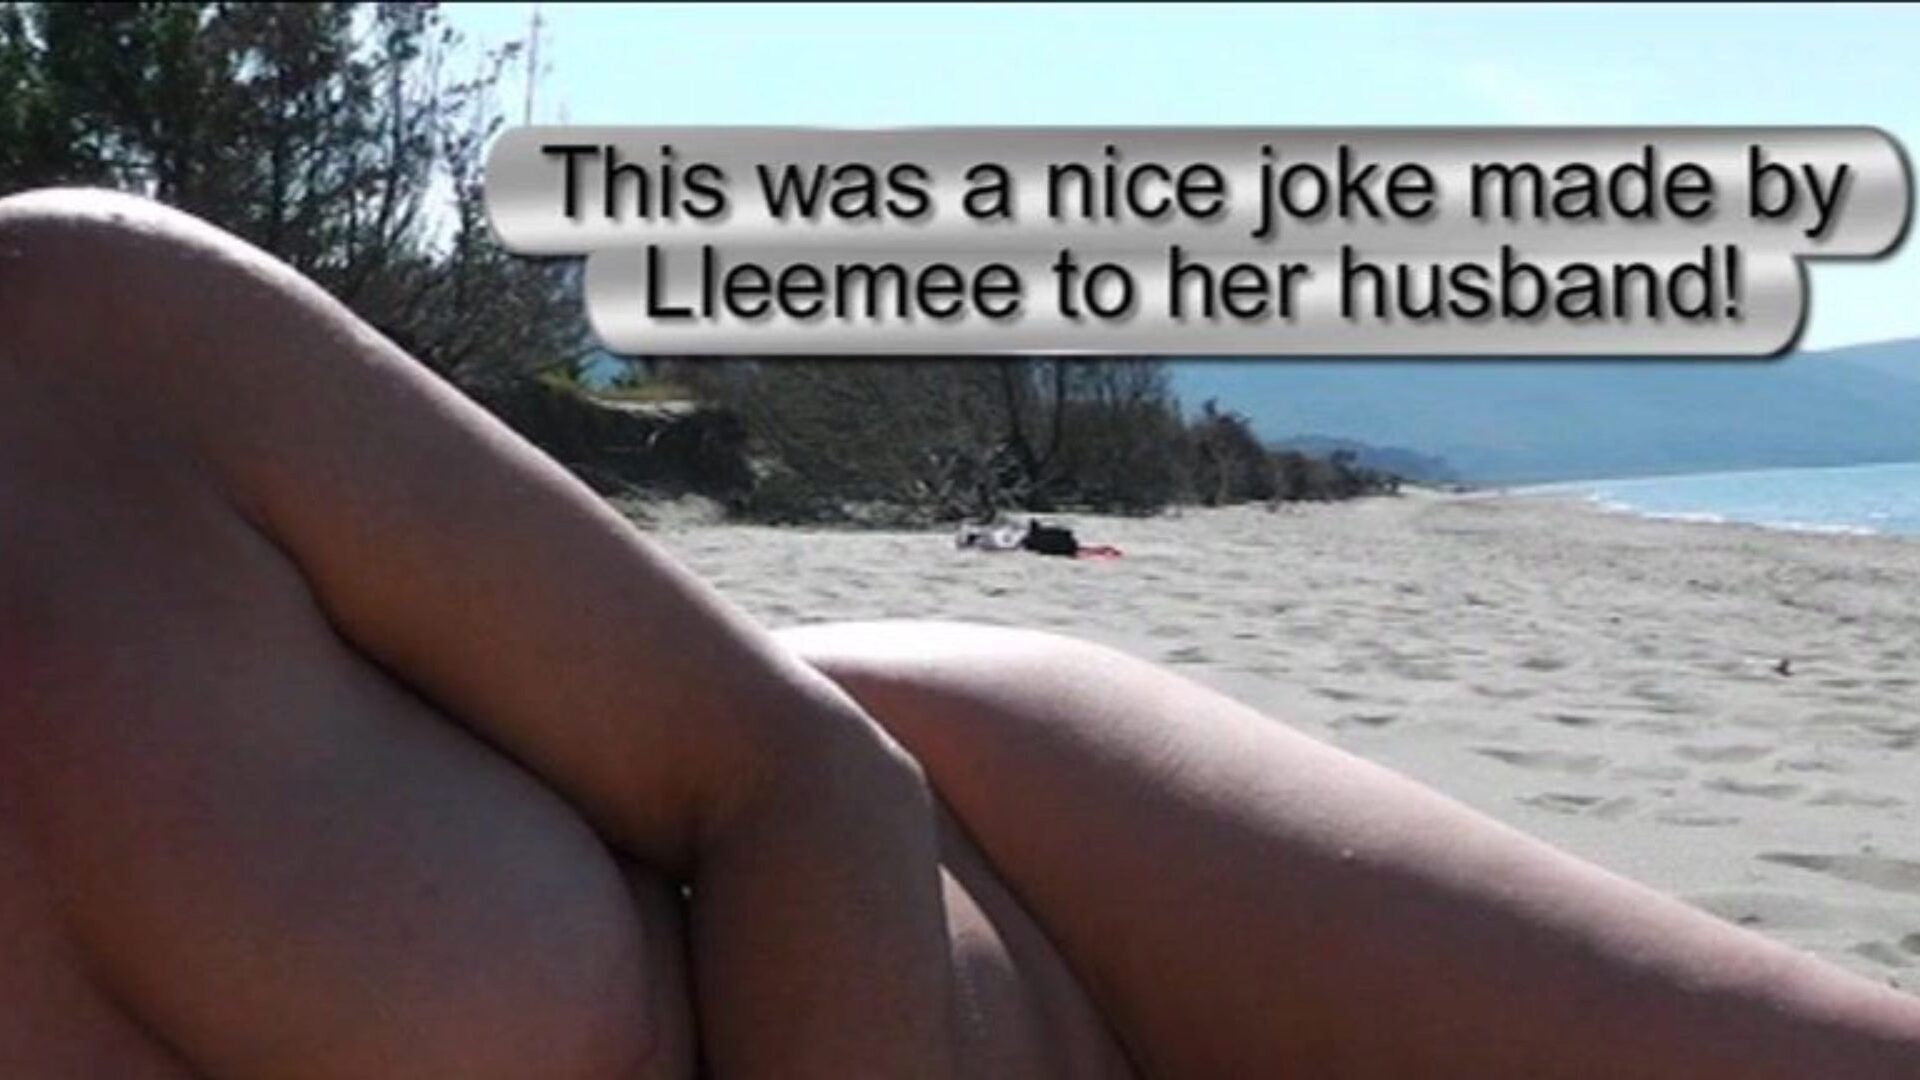 spectacle de plage descendant - homme témoin de 2 une blague très intéressante faite par lleemee à son conjoint